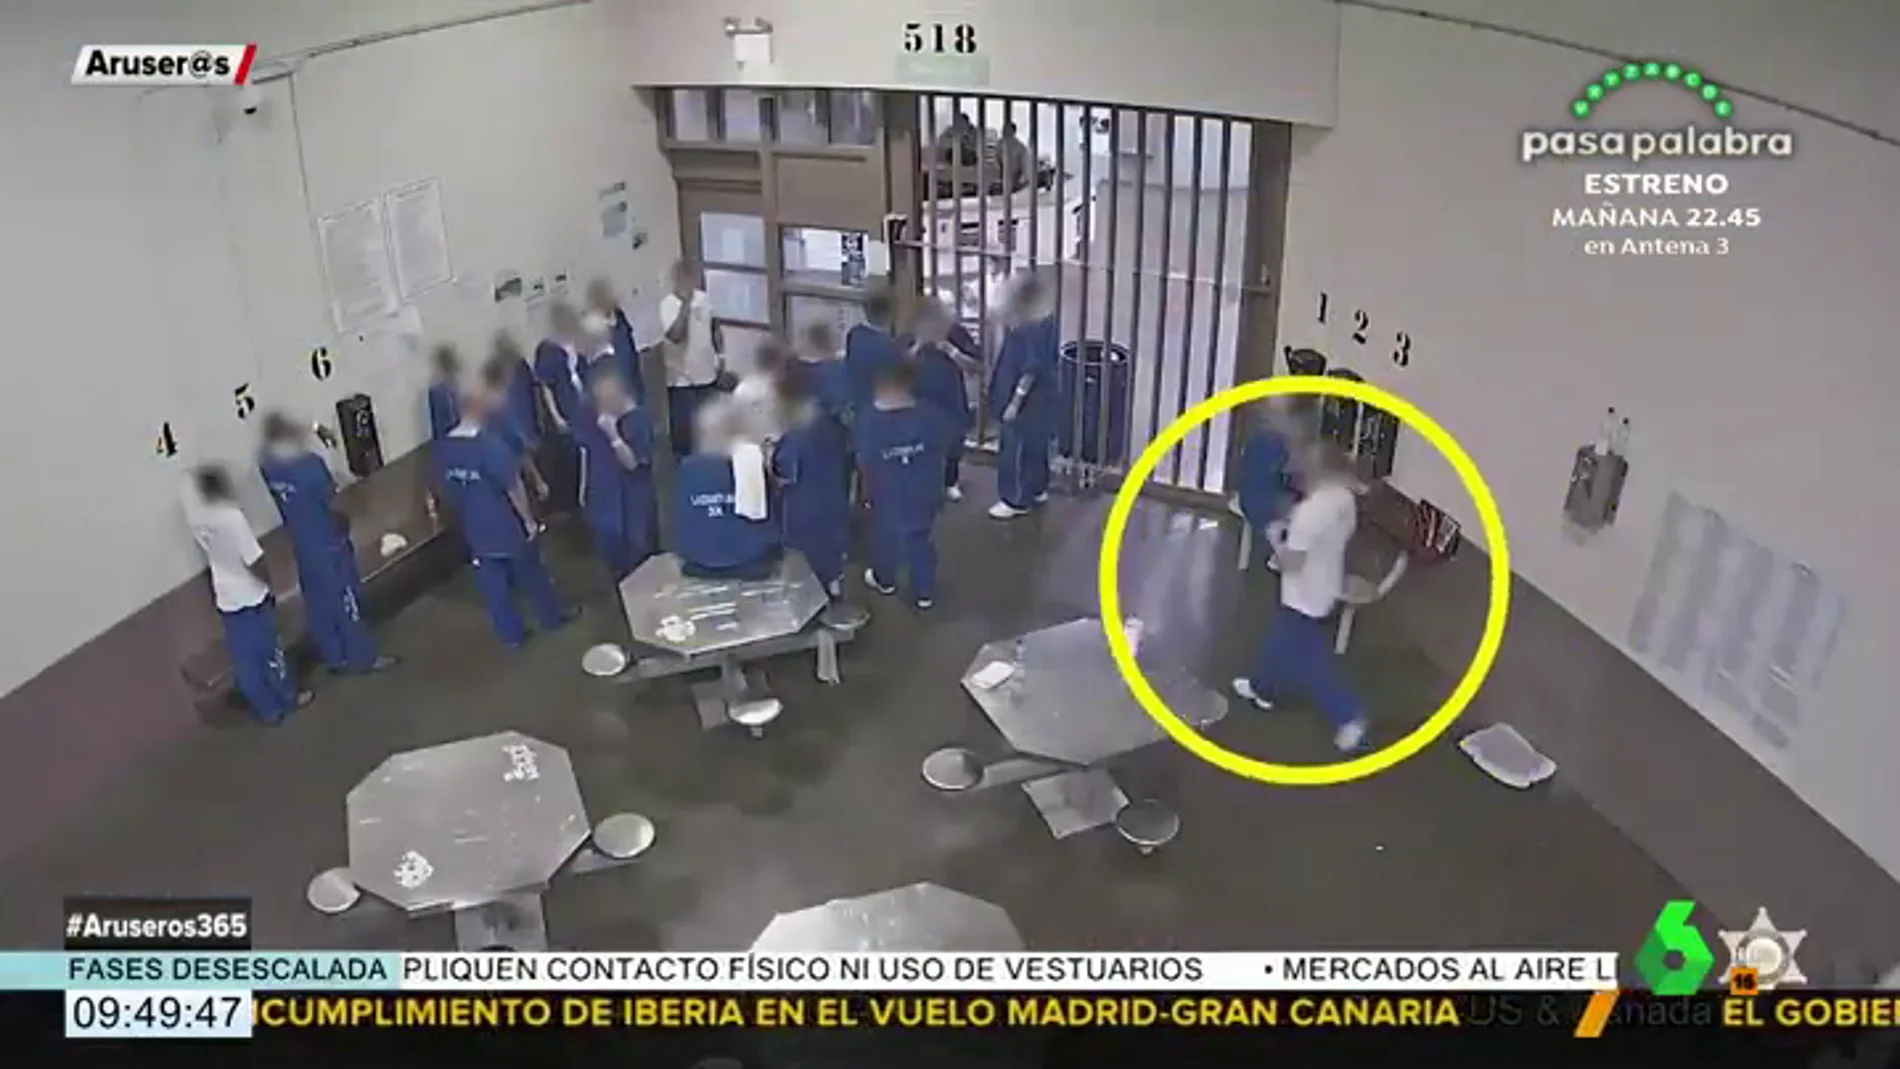 El impactante vídeo que muestra cómo unos presos intentan infectarse de coronavirus para poder salir de la cárcel